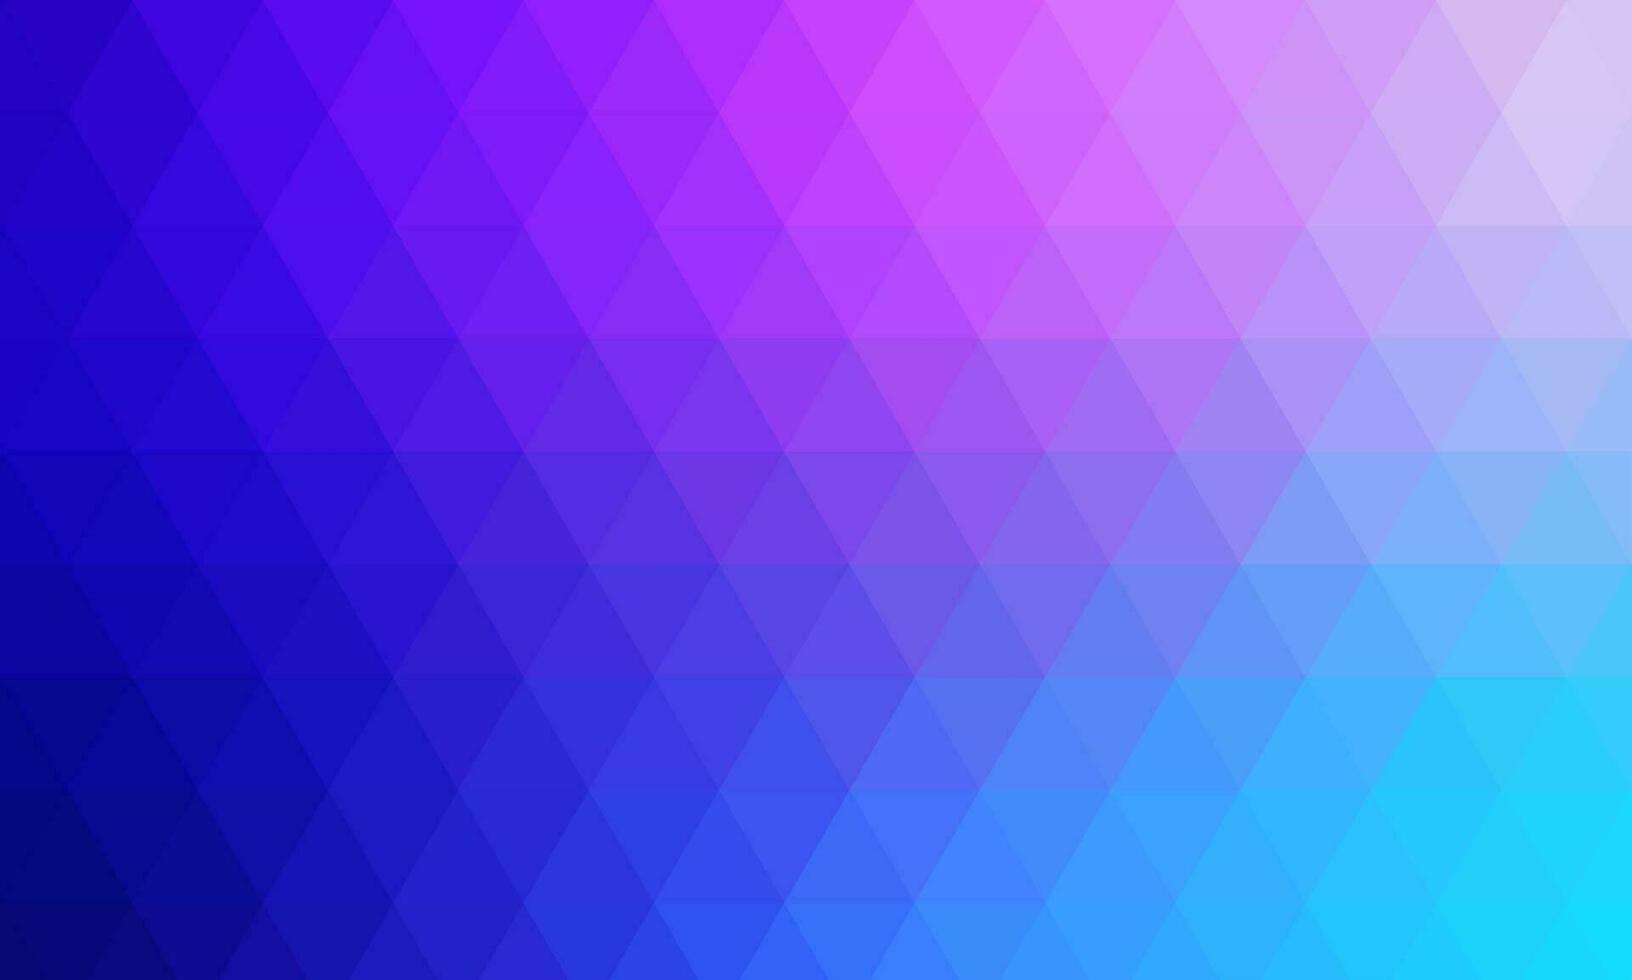 veelhoekige achtergrond met een samenstelling van helling kleuren Purper blauw roze. vector